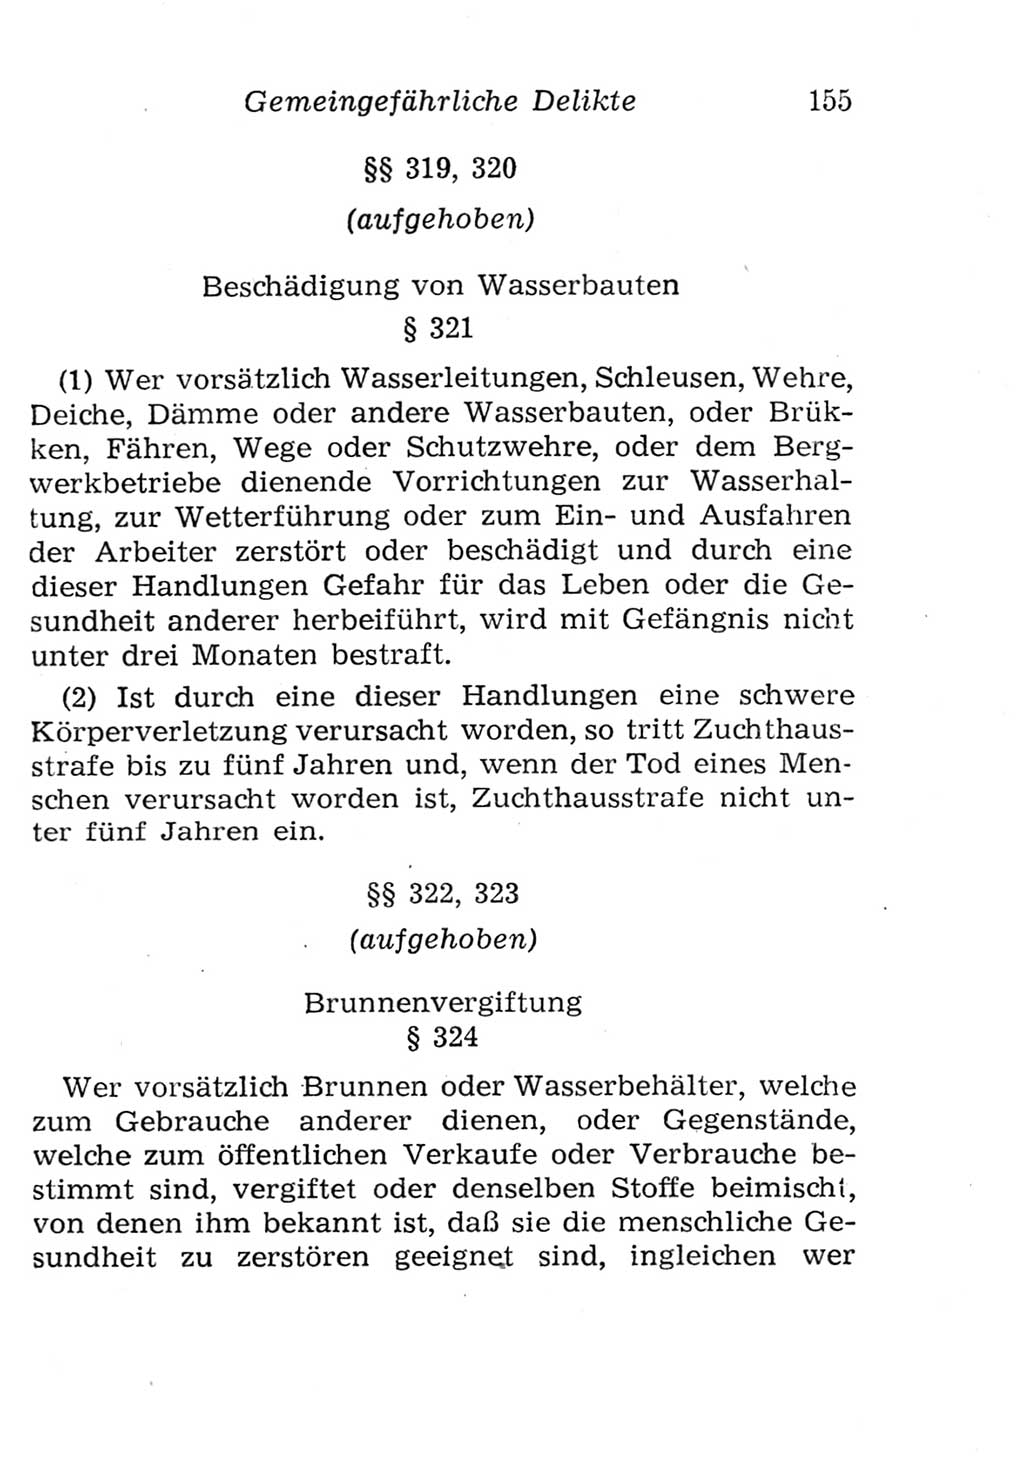 Strafgesetzbuch (StGB) und andere Strafgesetze [Deutsche Demokratische Republik (DDR)] 1957, Seite 155 (StGB Strafges. DDR 1957, S. 155)